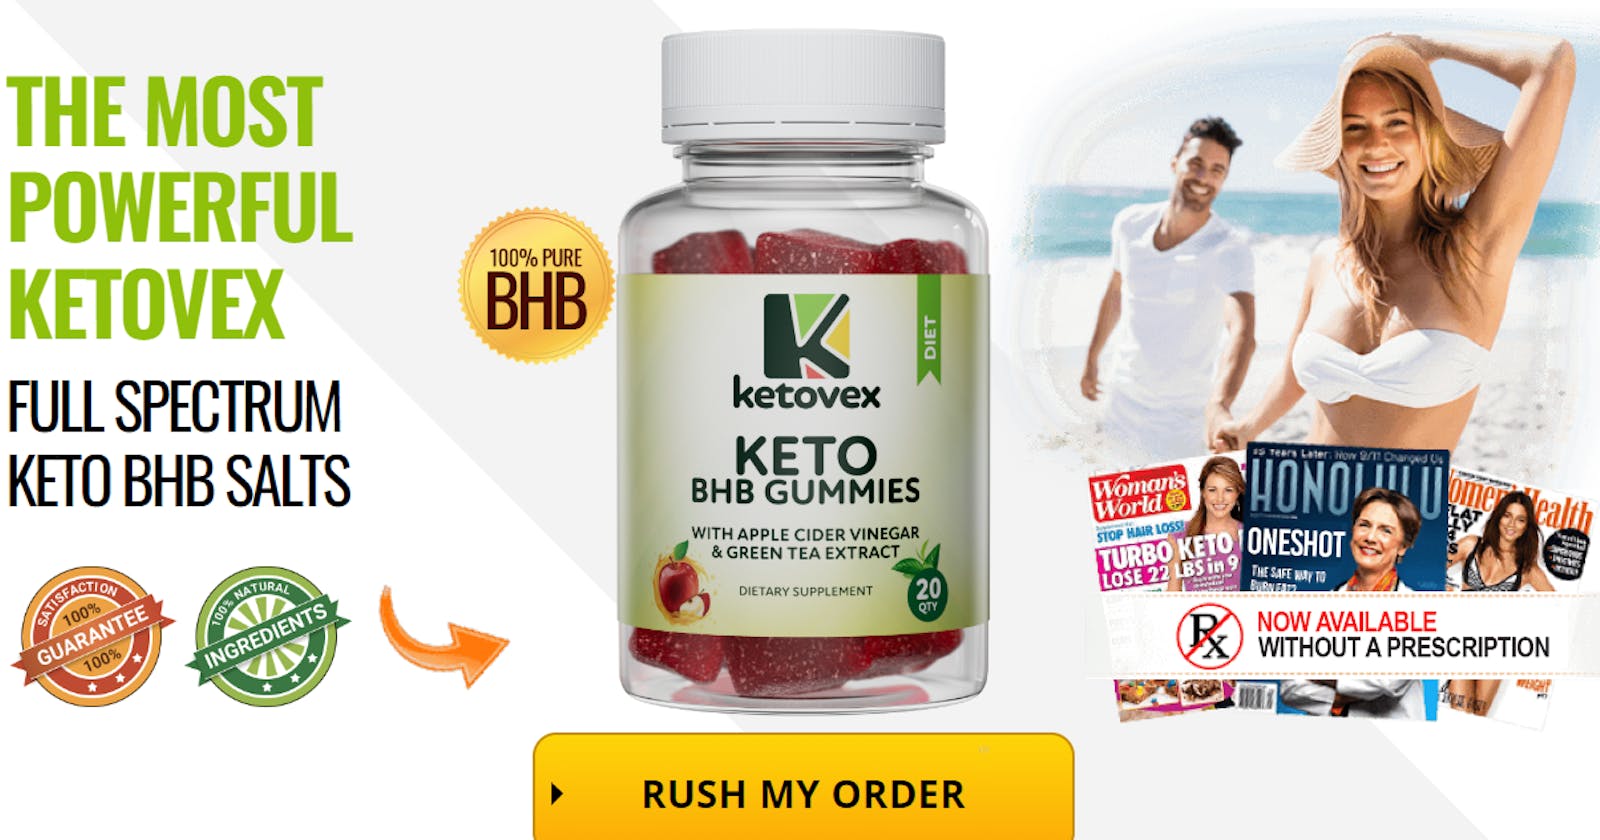 Deliciously Ketogenic: Ketovex Keto BHB Gummies Unleashed